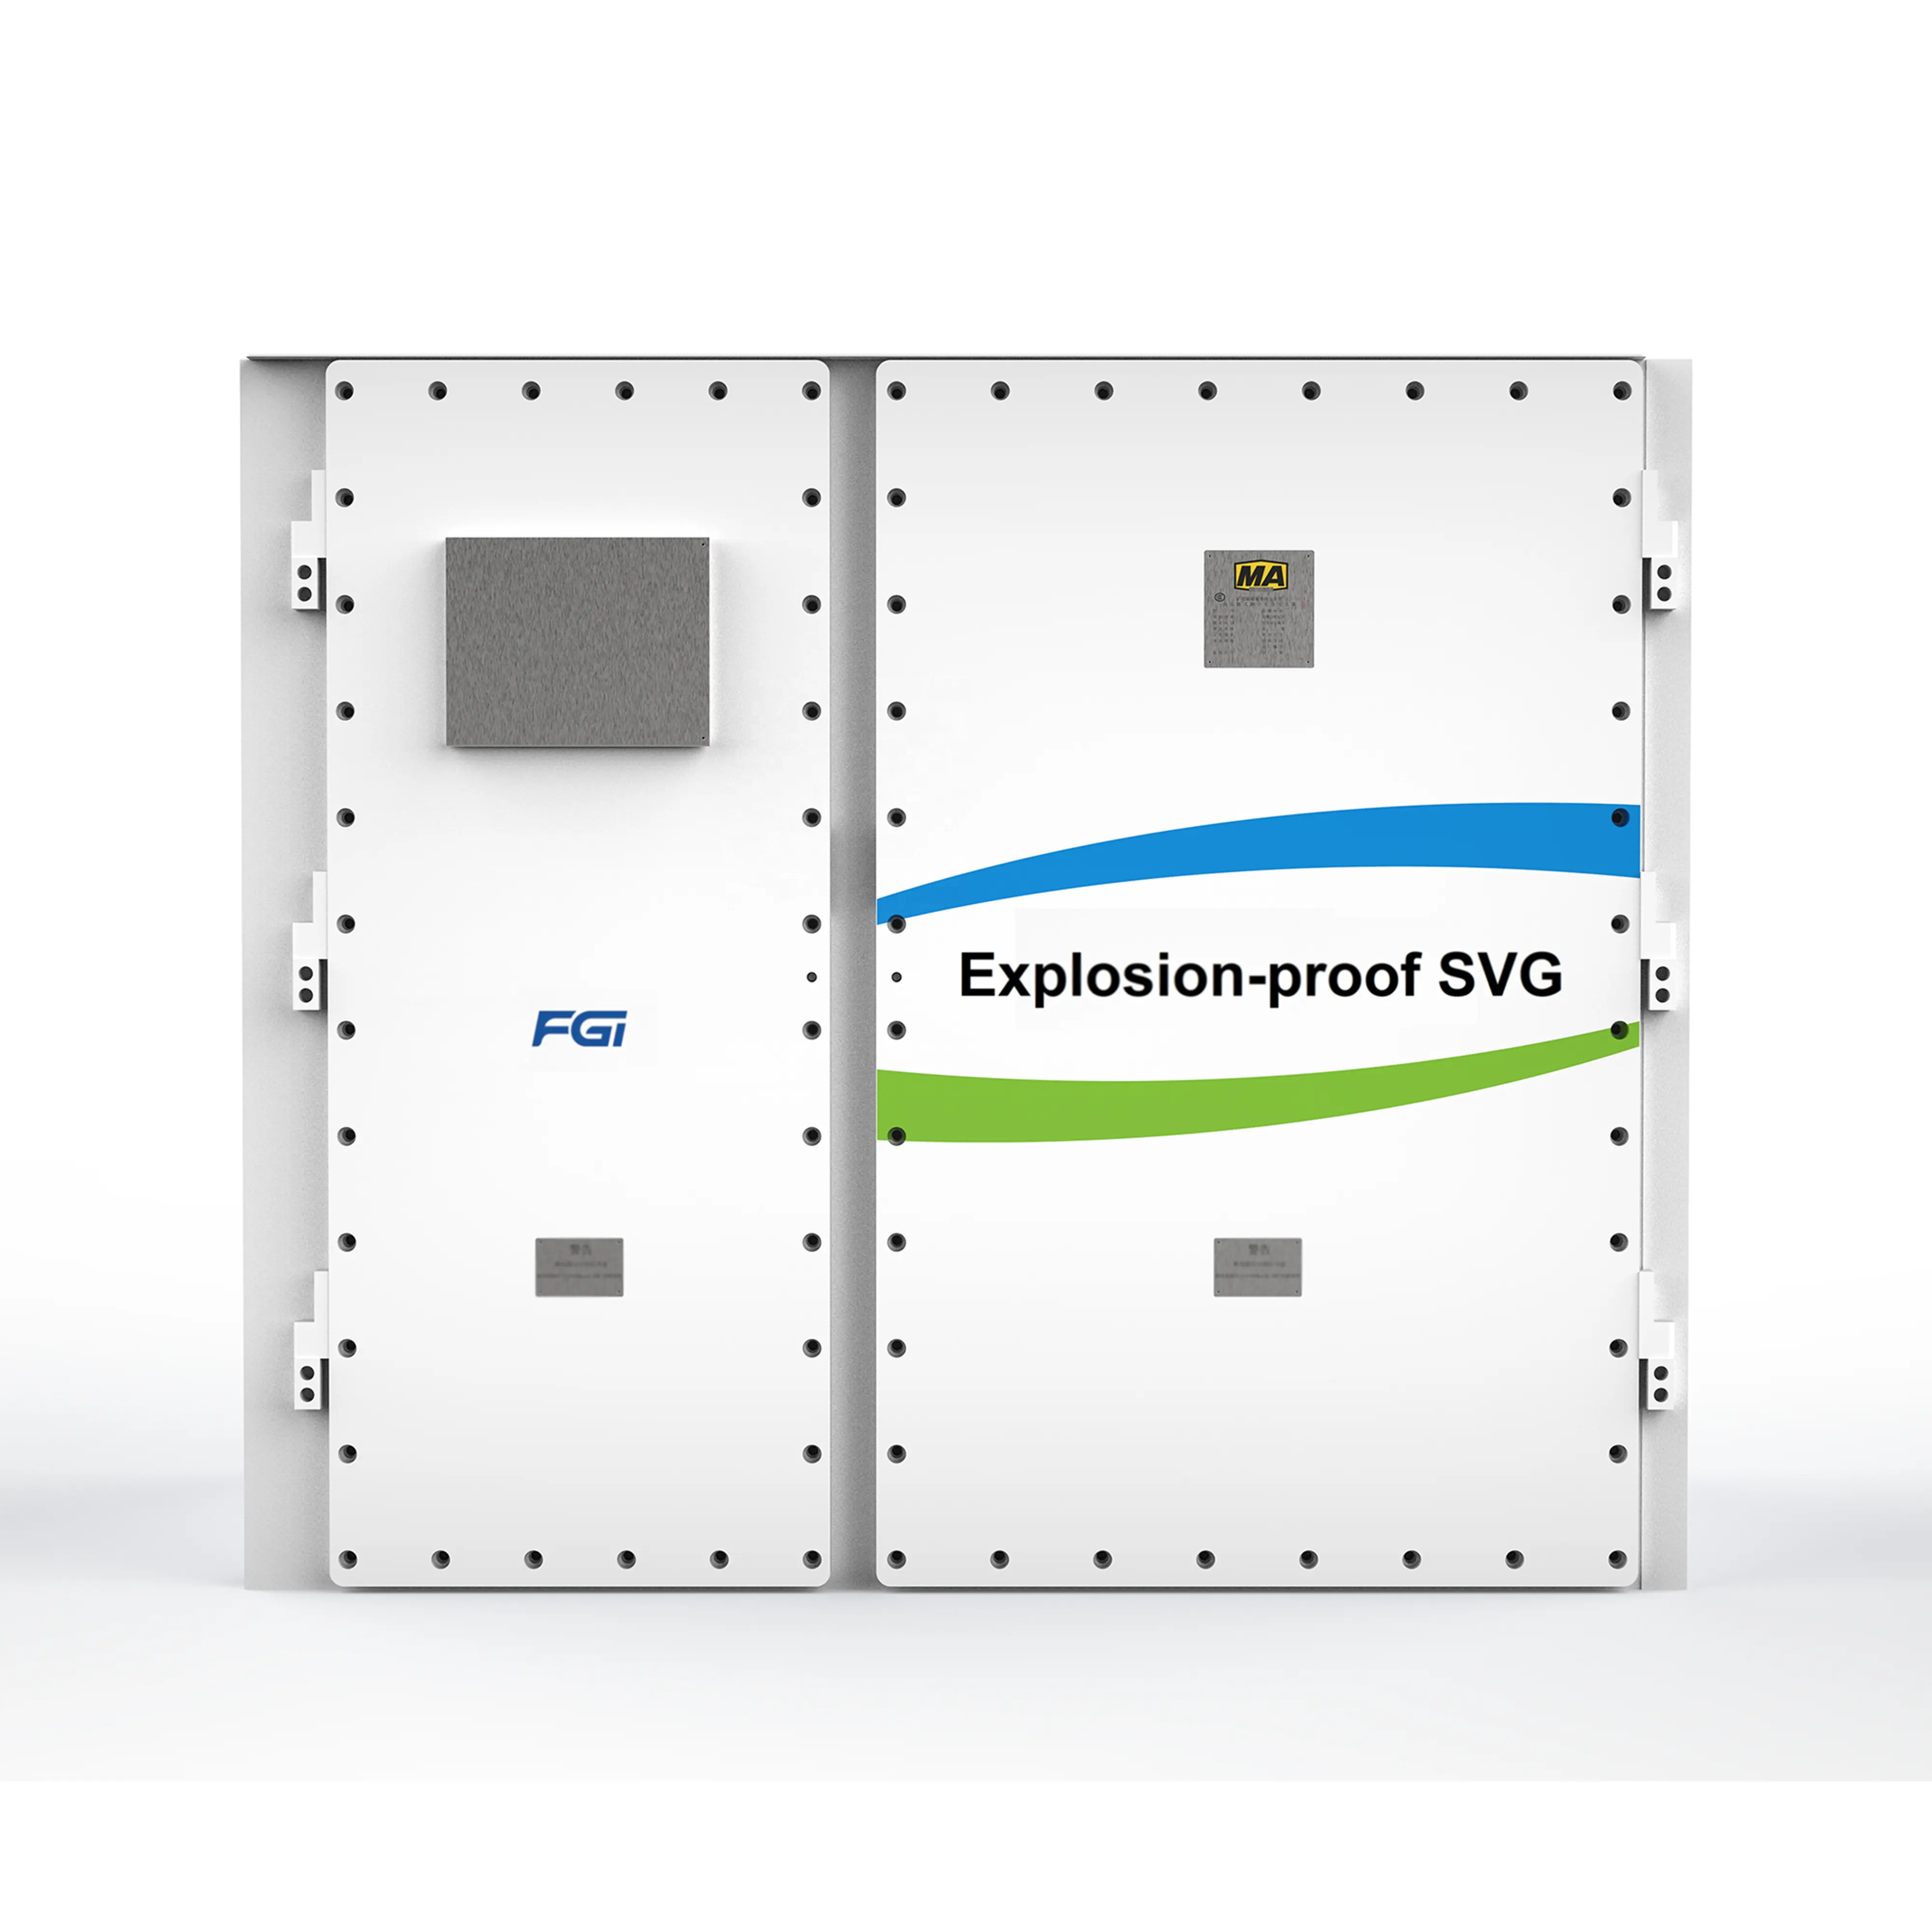 Compensateur synchrone statique sûr et stable 6kV générateur de Var statique SVG anti-déflagrant pour divers moteurs asynchrones